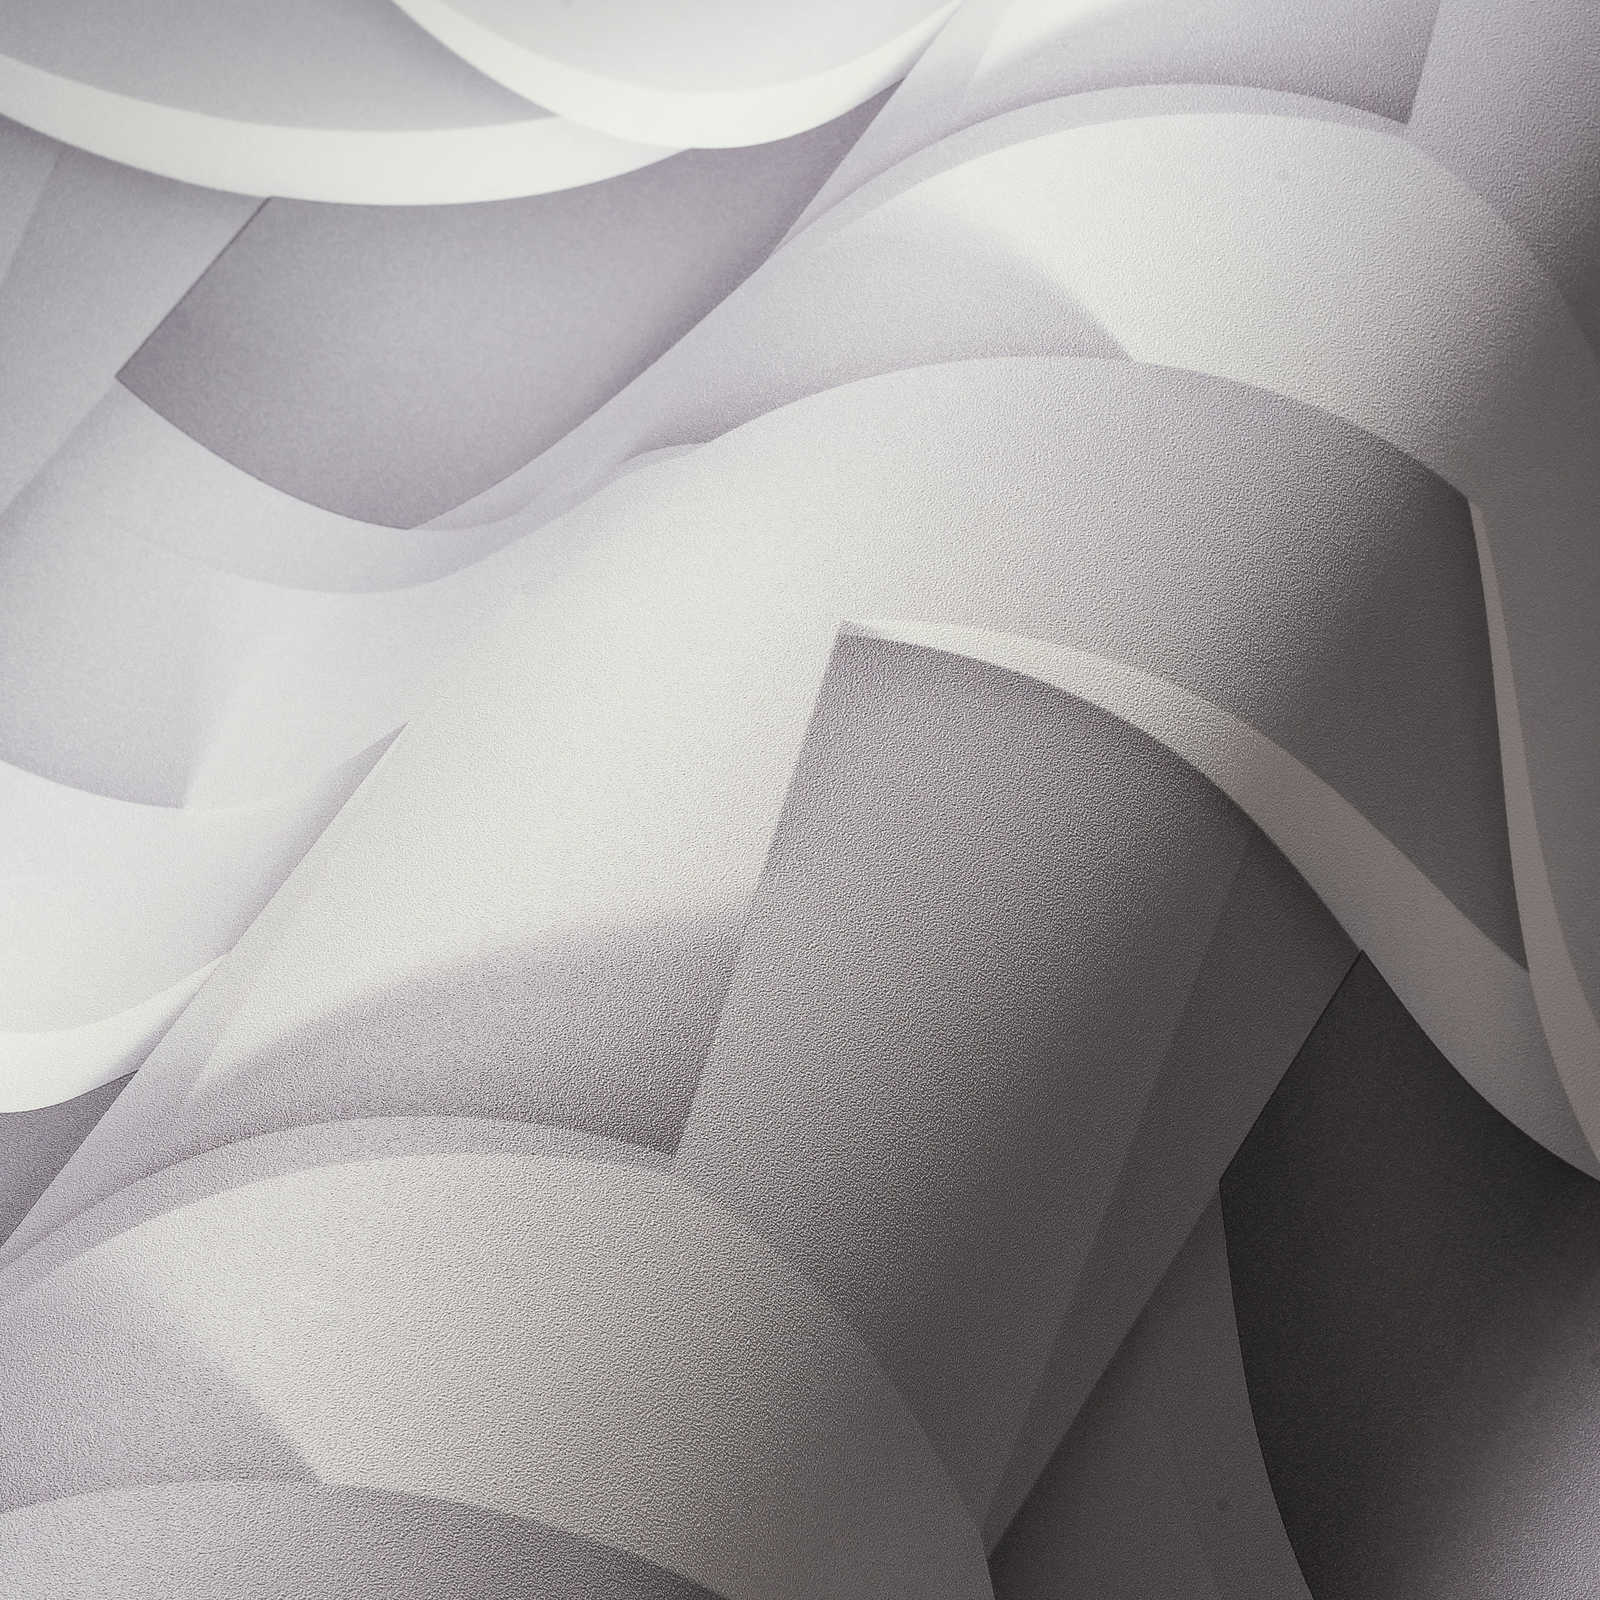             3D-behang lichtgrijs grafisch patroon met betonlook
        